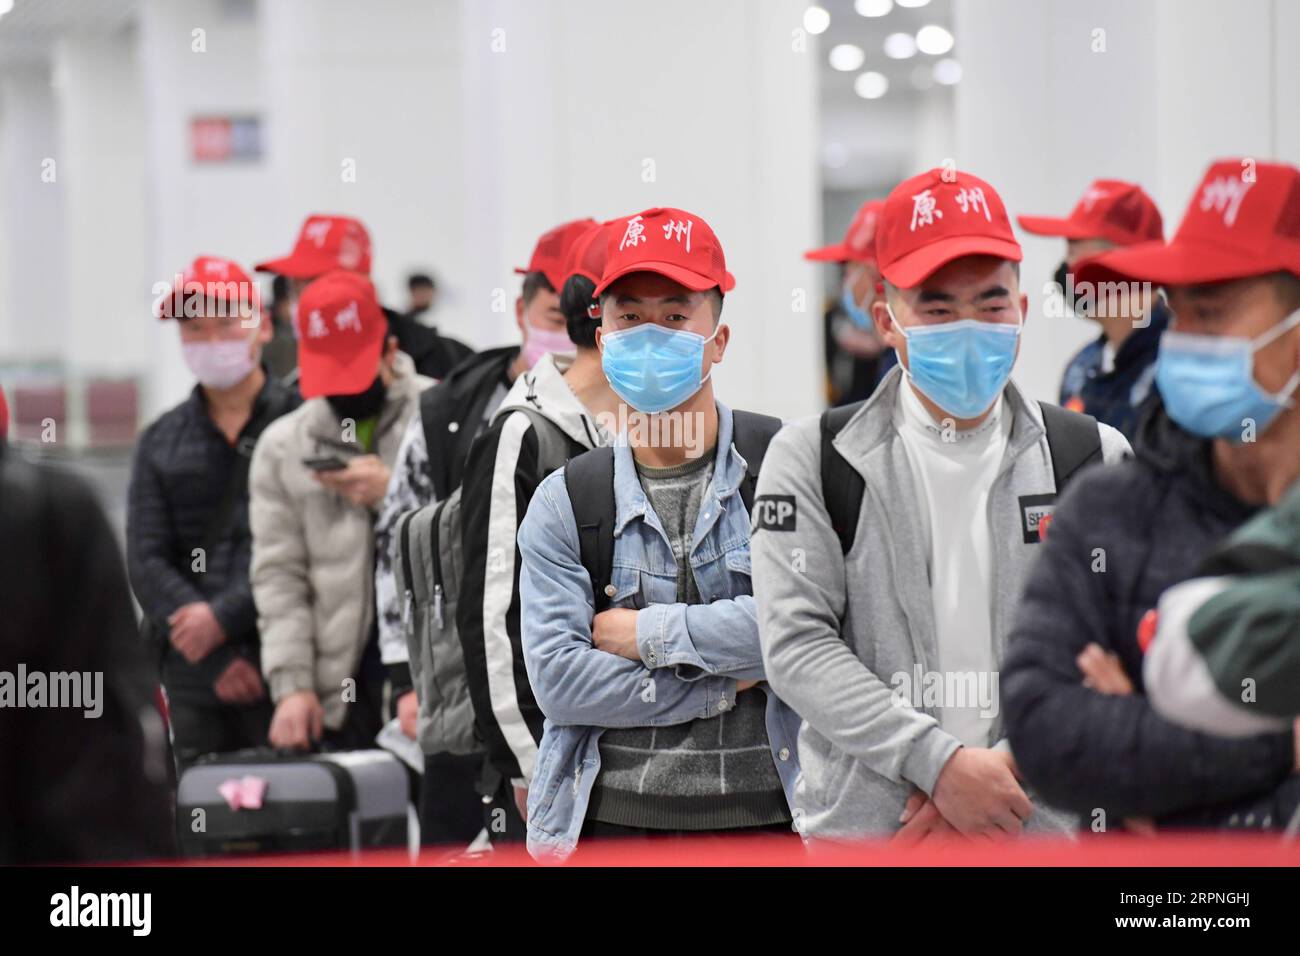 200228 -- FUZHOU, 28 février 2020 -- des travailleurs migrants arrivent à l'aéroport de Changle à Fuzhou, capitale de la province du Fujian du sud-est de la Chine, le 27 février 2020. Le premier lot de 142 travailleurs migrants de la ville de Guyuan à la province du Fujian est arrivé jeudi par vol affrété. CHINE-NINGXIA-FUJIAN-TRAVAILLEURS MIGRANTS-RETOUR AU TRAVAIL CN JIANGXKEHONG PUBLICATIONXNOTXINXCHN Banque D'Images